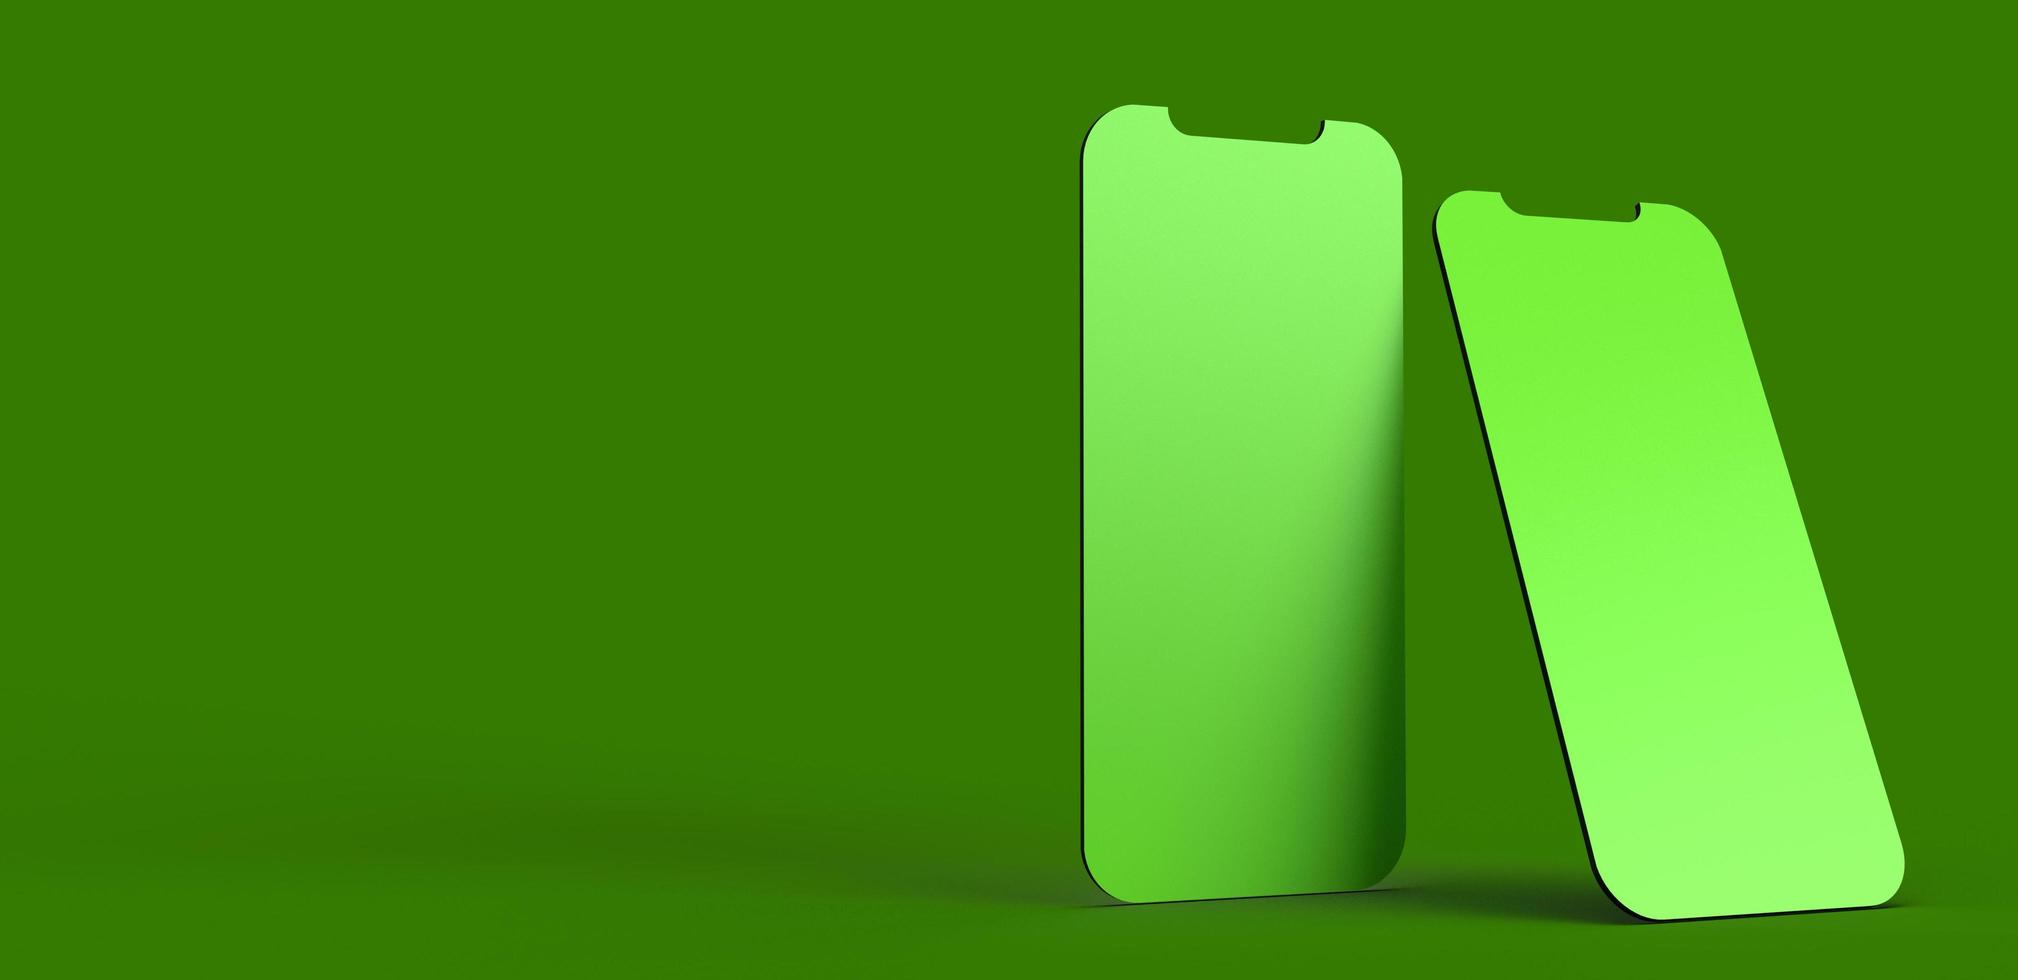 verde cor escura smartphone tablet móvel tela sensível ao toque objeto maquete vazio fundo papel de parede cópia espaço criativo design gráfico negócios tecnologia eletrônico digital online display.3d render foto